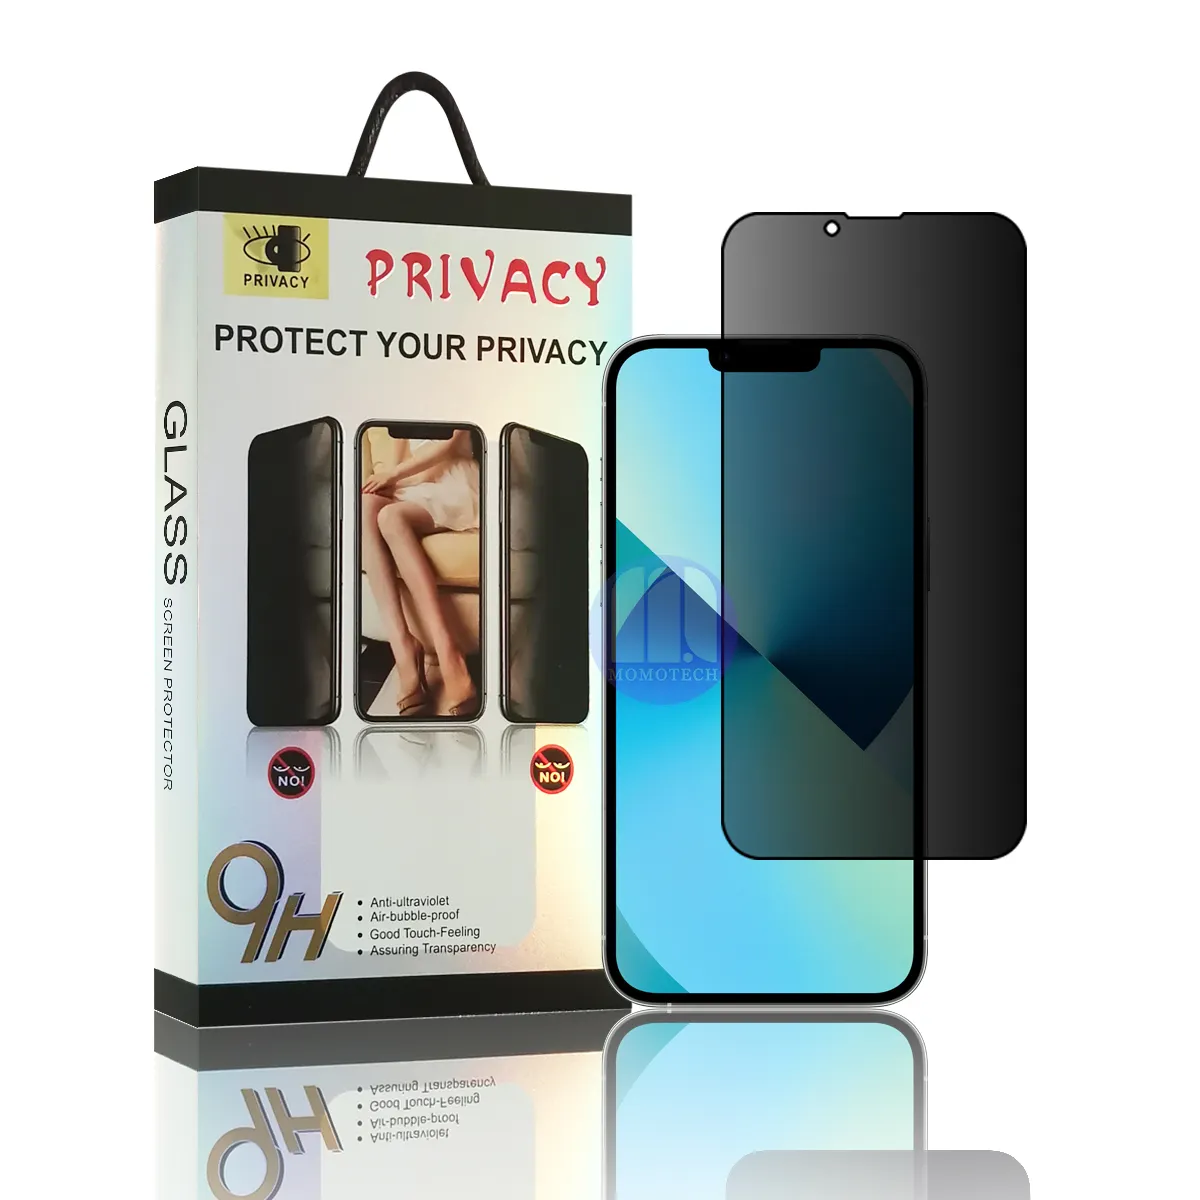 पूर्ण कवर गोपनीयता टेम्पर्ड ग्लास फिल्म के लिए खुदरा पैकेजिंग के साथ iphone 12 13 प्रो मैक्स विरोधी जासूस गोपनीयता स्क्रीन रक्षक